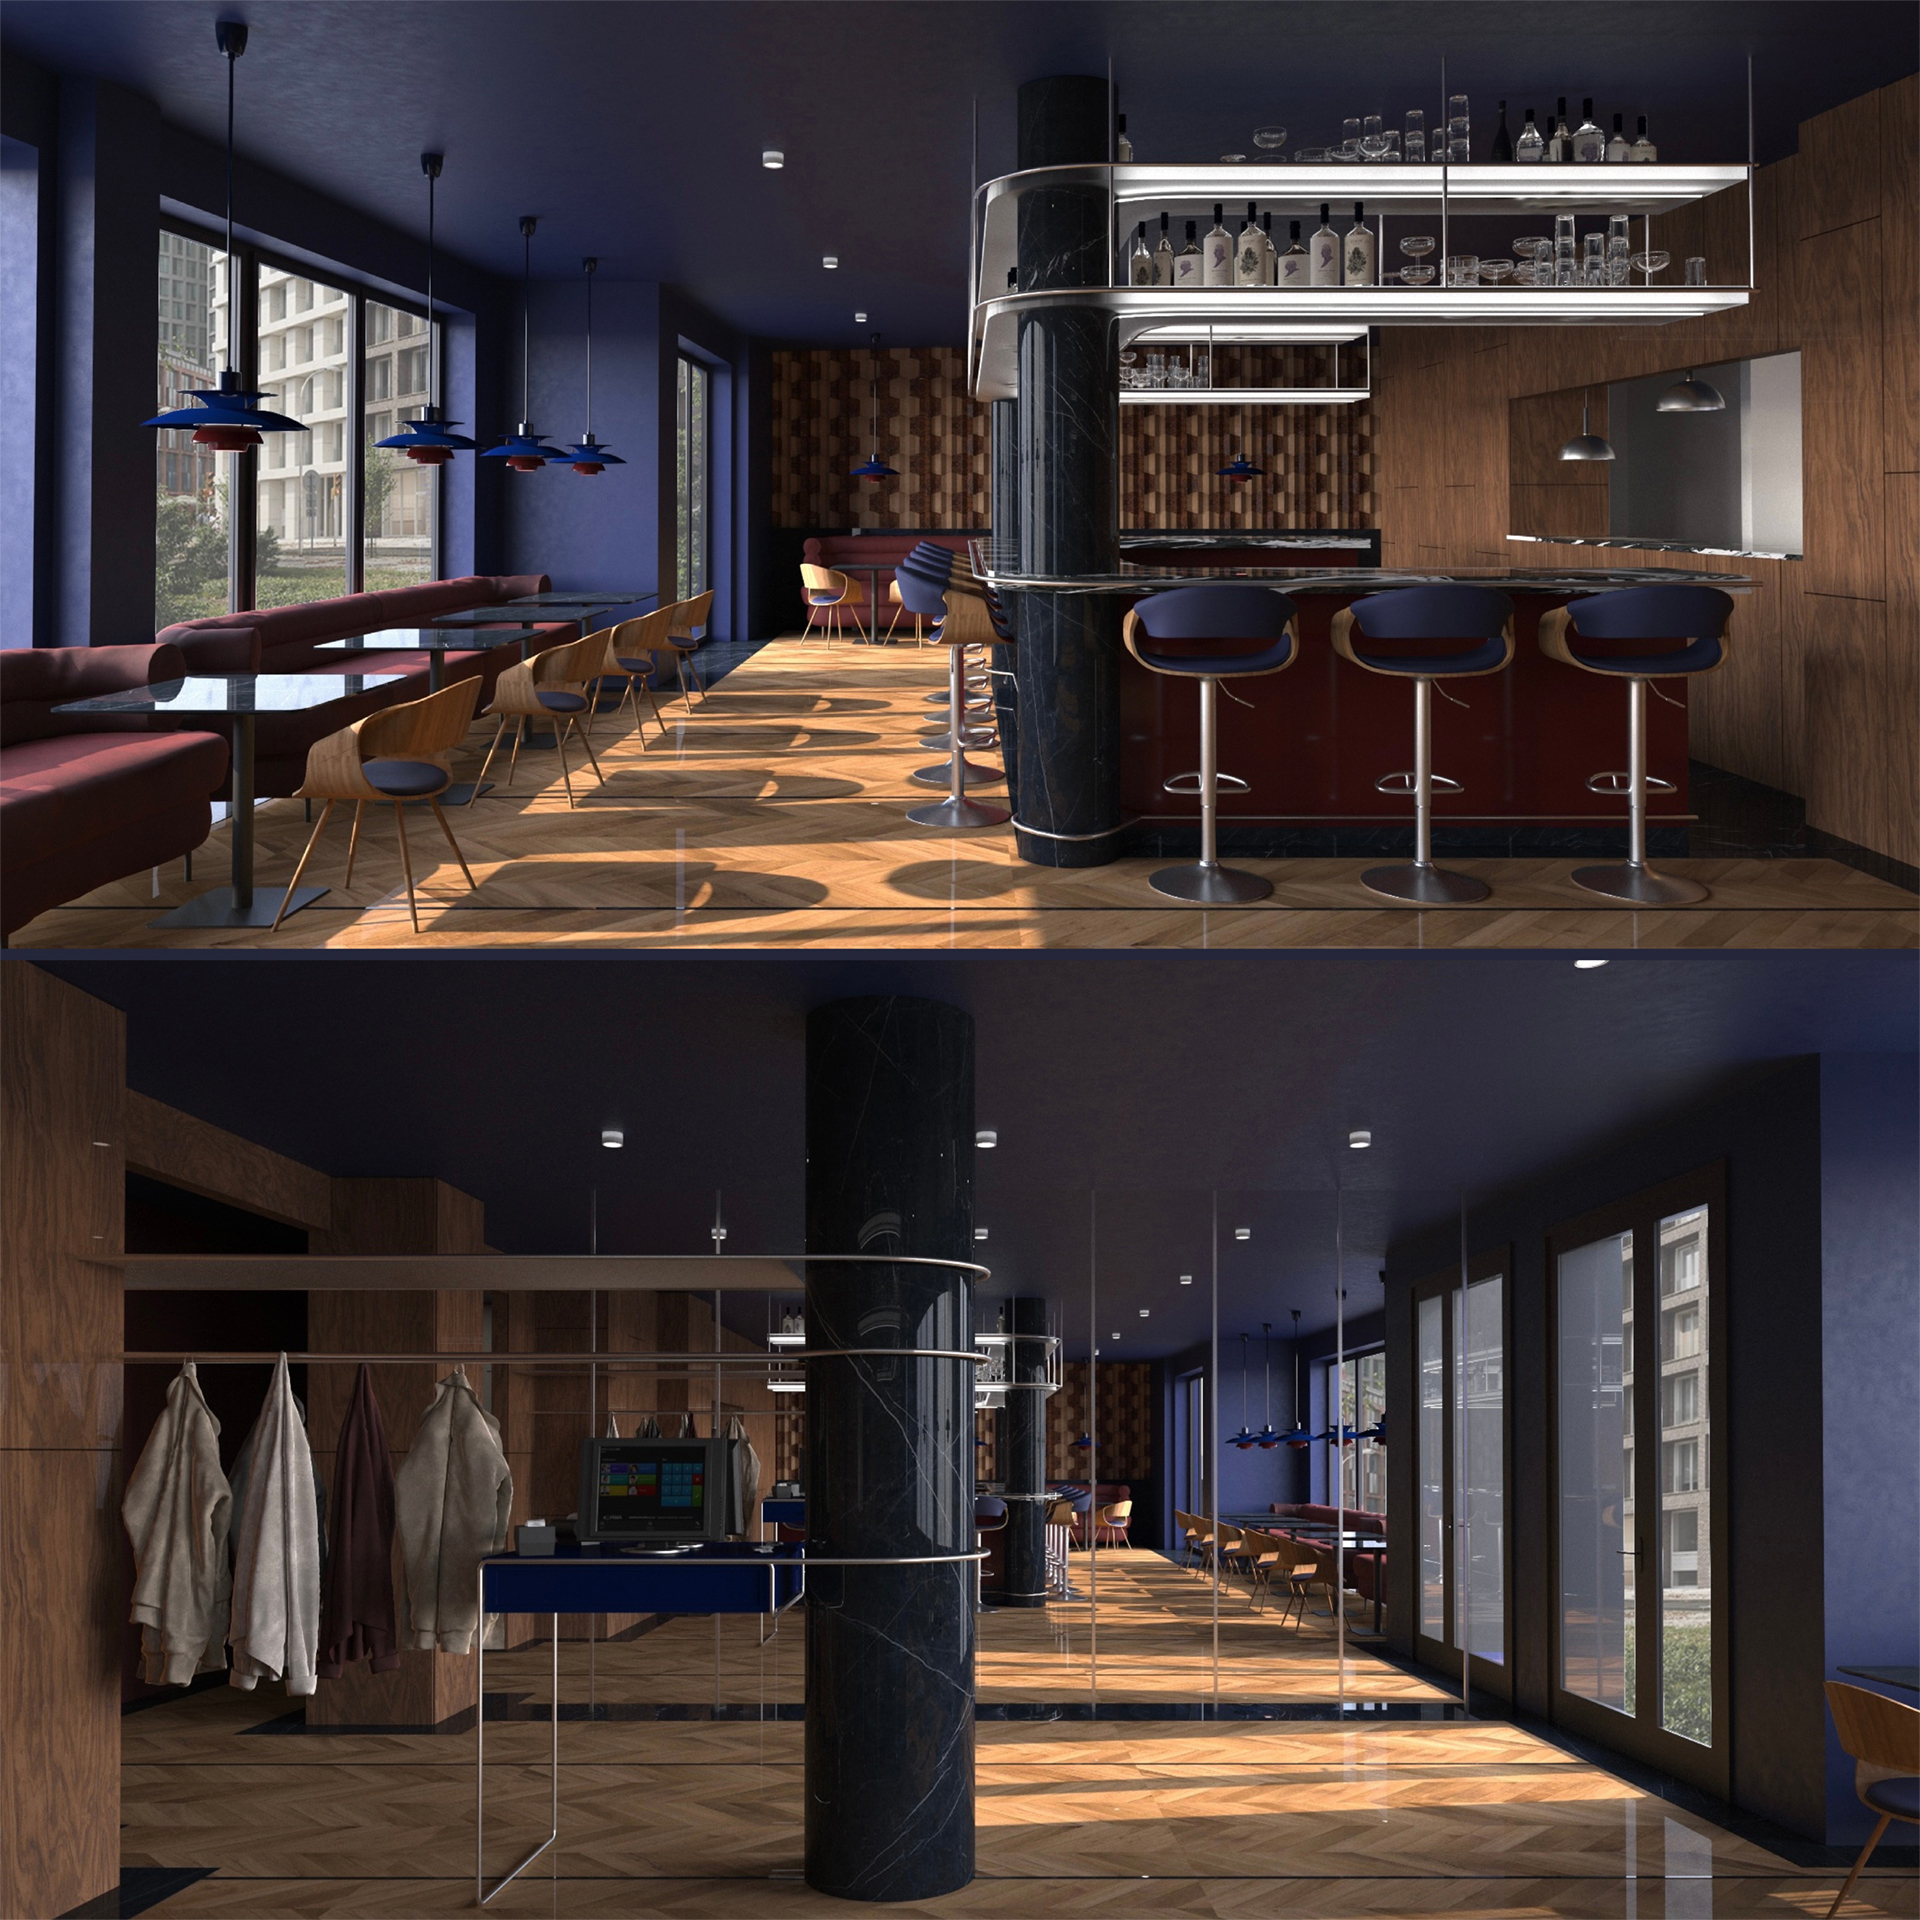 Plansza przedstawiająca dwie poziome wizualizacje wnętrza restauracji utrzymanej w stylistyce dwudziestolecia międzywojennego. Zaprezentowano widok na siedziska ujawniając boczną stronę baru oraz widok na szatnię i kasę znajdującą się przy wejściu do restauracji. 